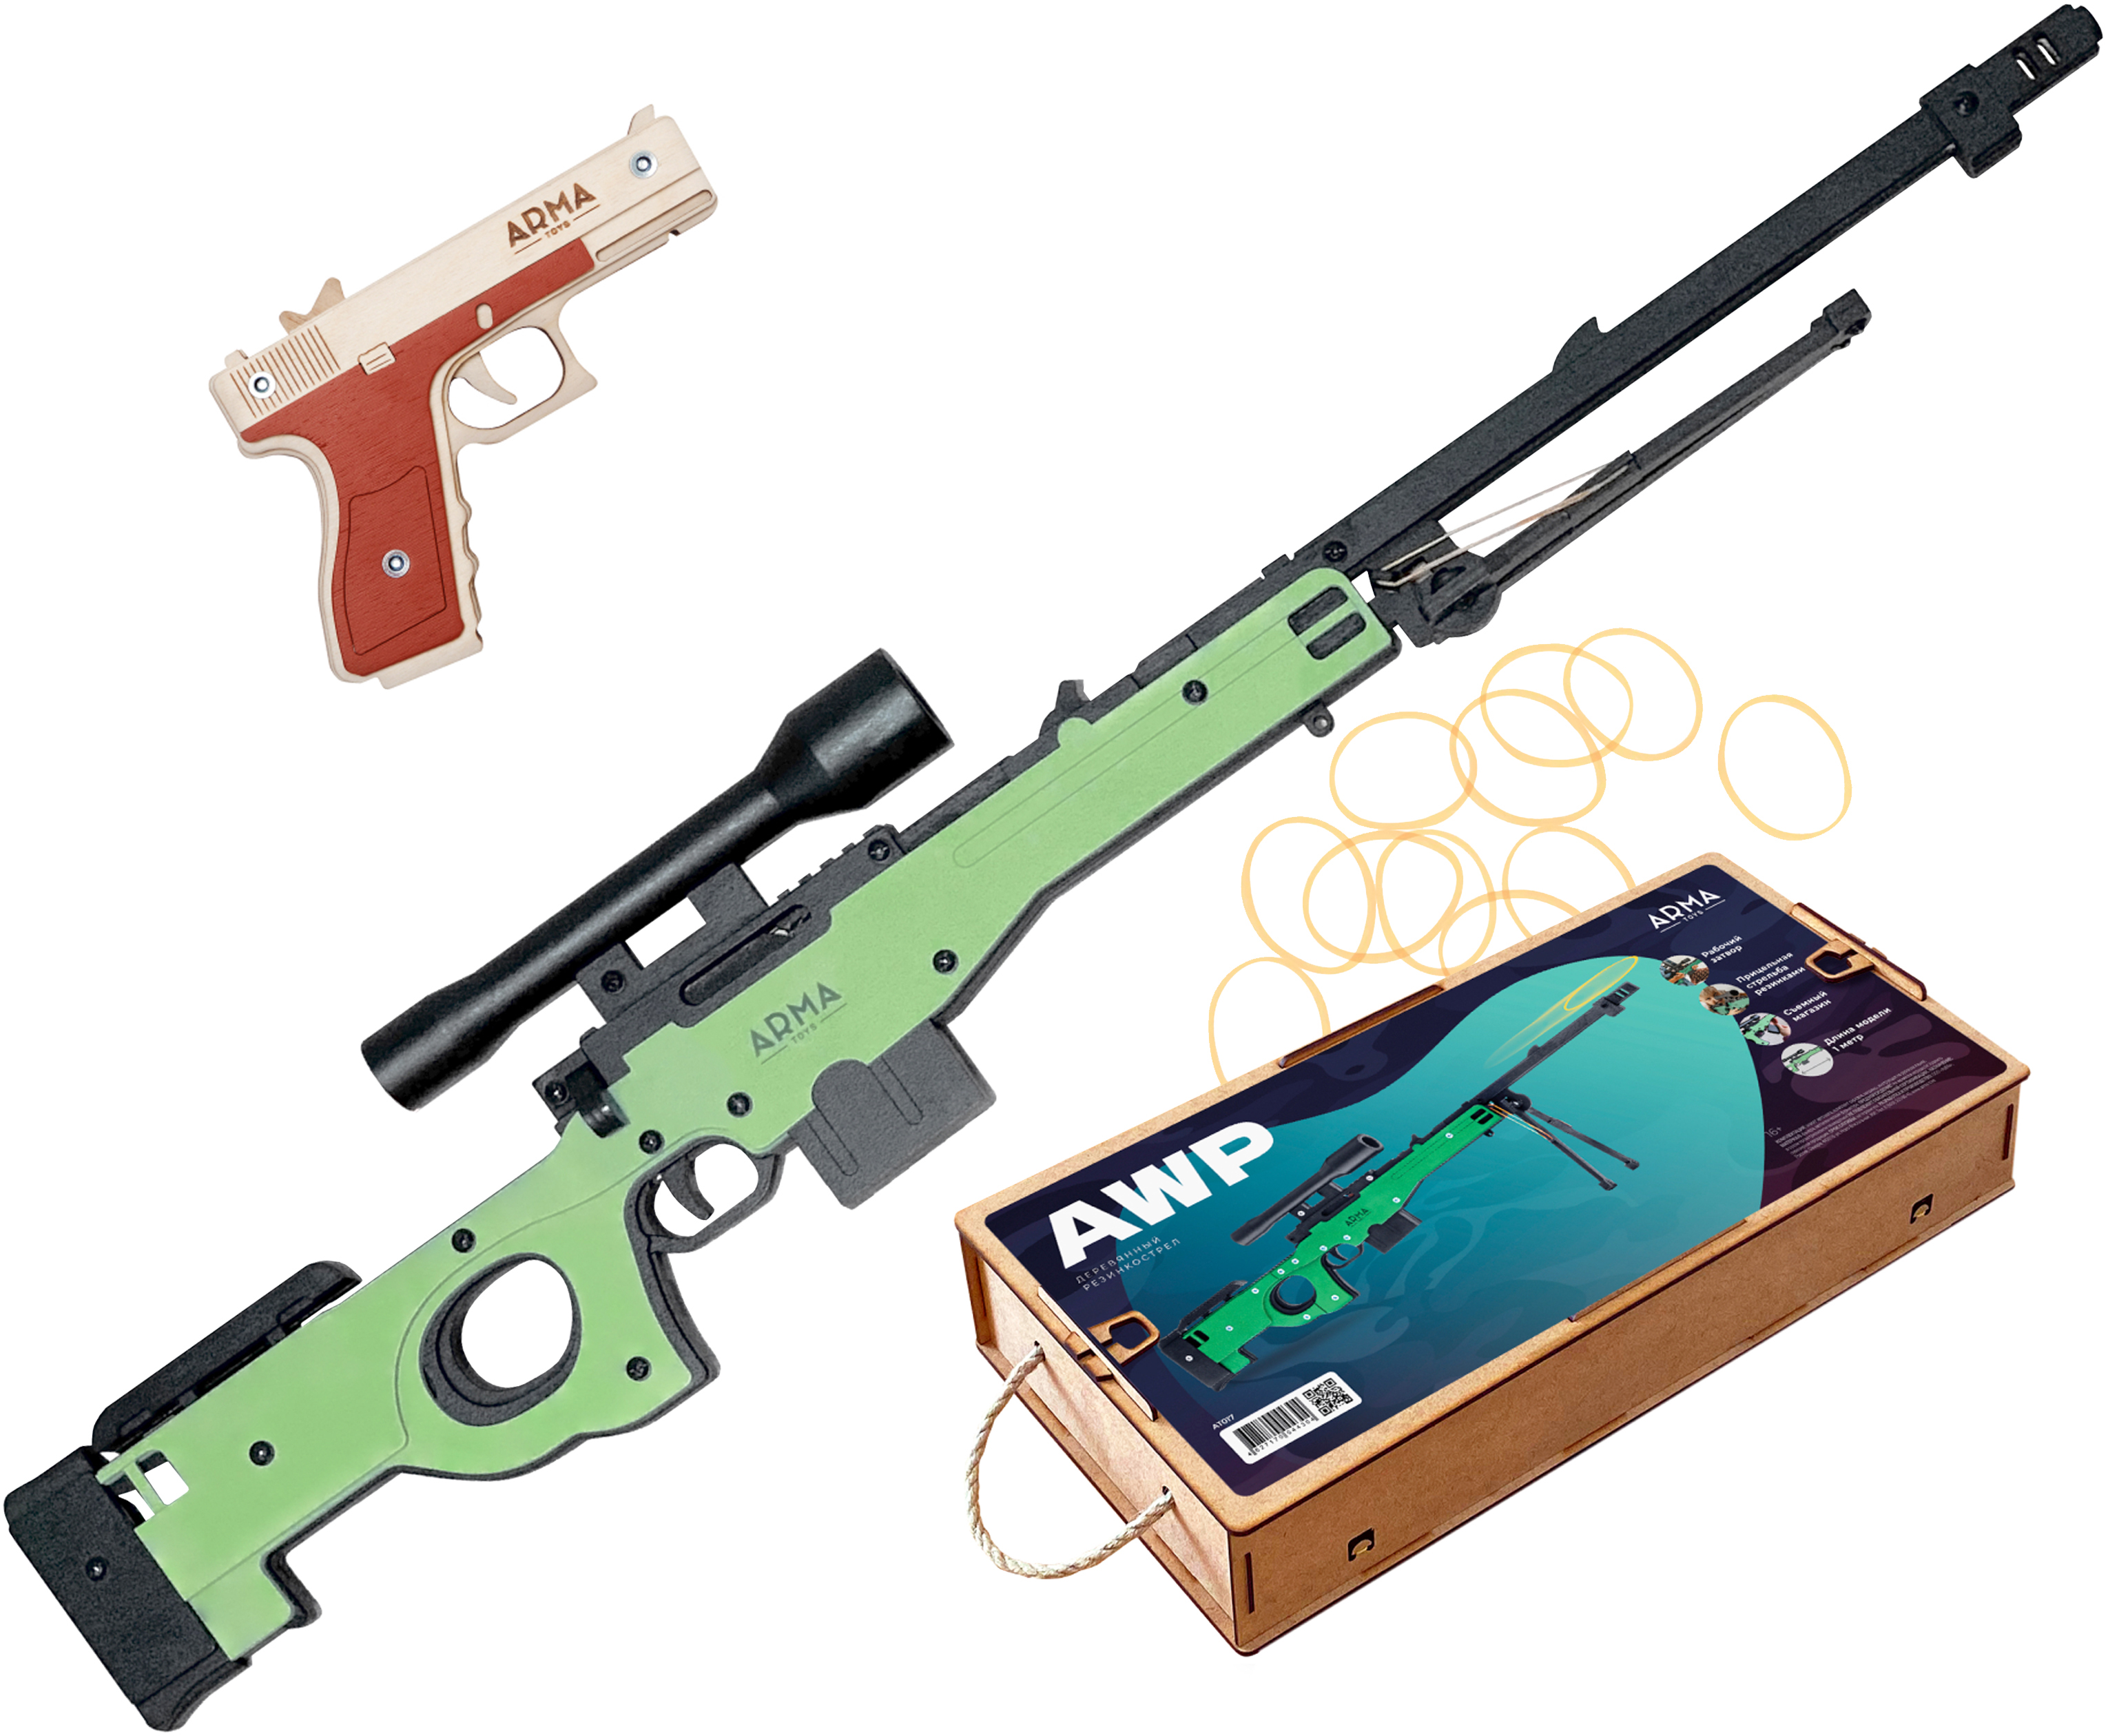 Набор игрушечных резинкострелов Arma toys Спецназ полиции винтовка AWP, пистолет Глок набор резинкострелов arma toys спецназ гру пистолет glock винтовка всс винторез at9213